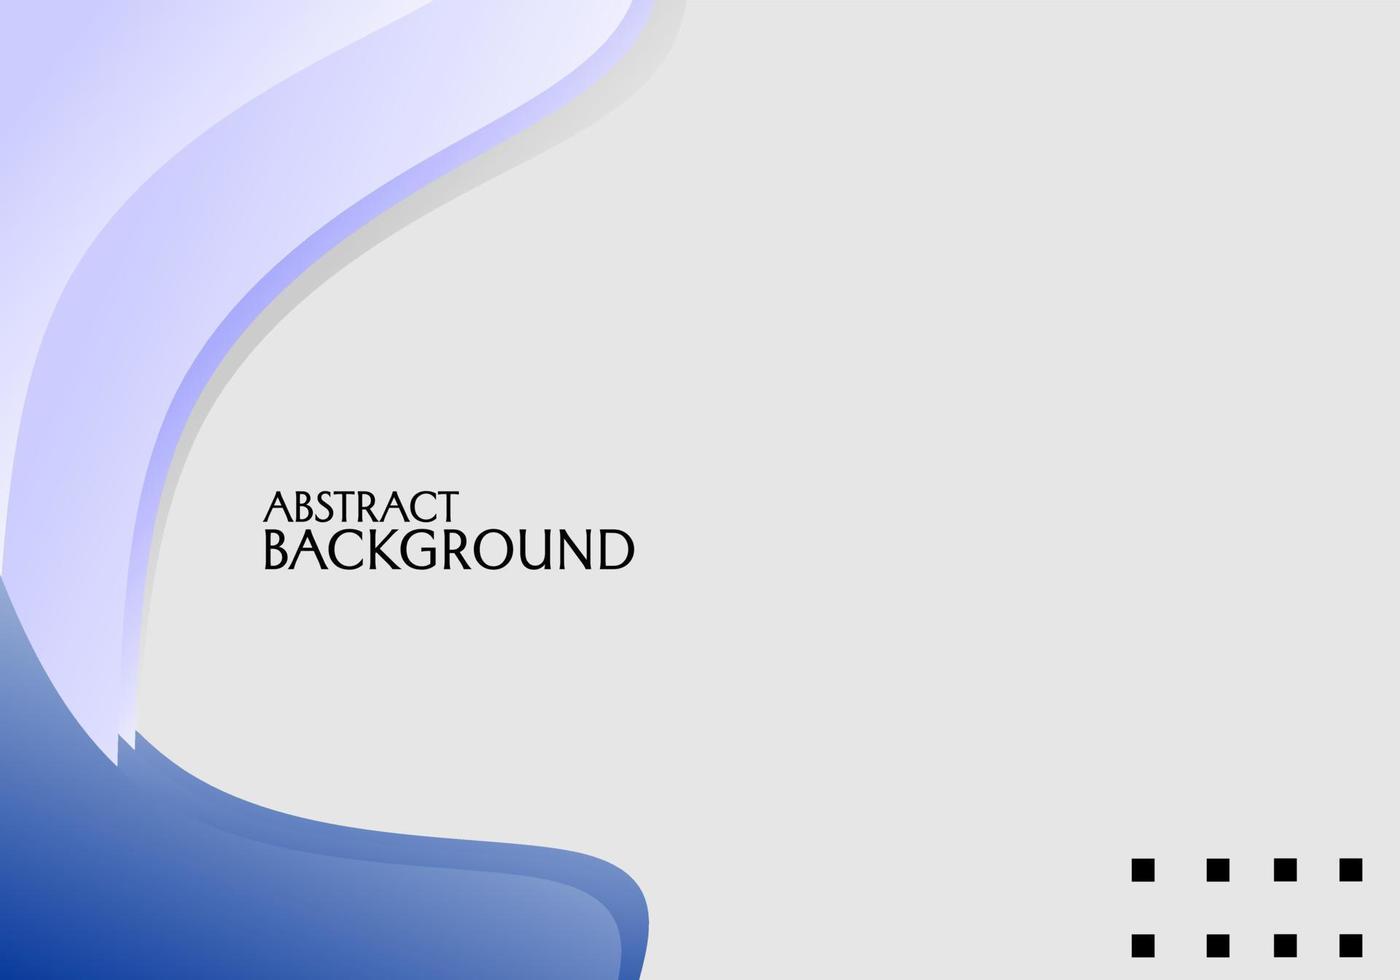 blå abstrakt bakgrundsdesign med böjda mönstergradientelement. används för banner, affischdesign vektor